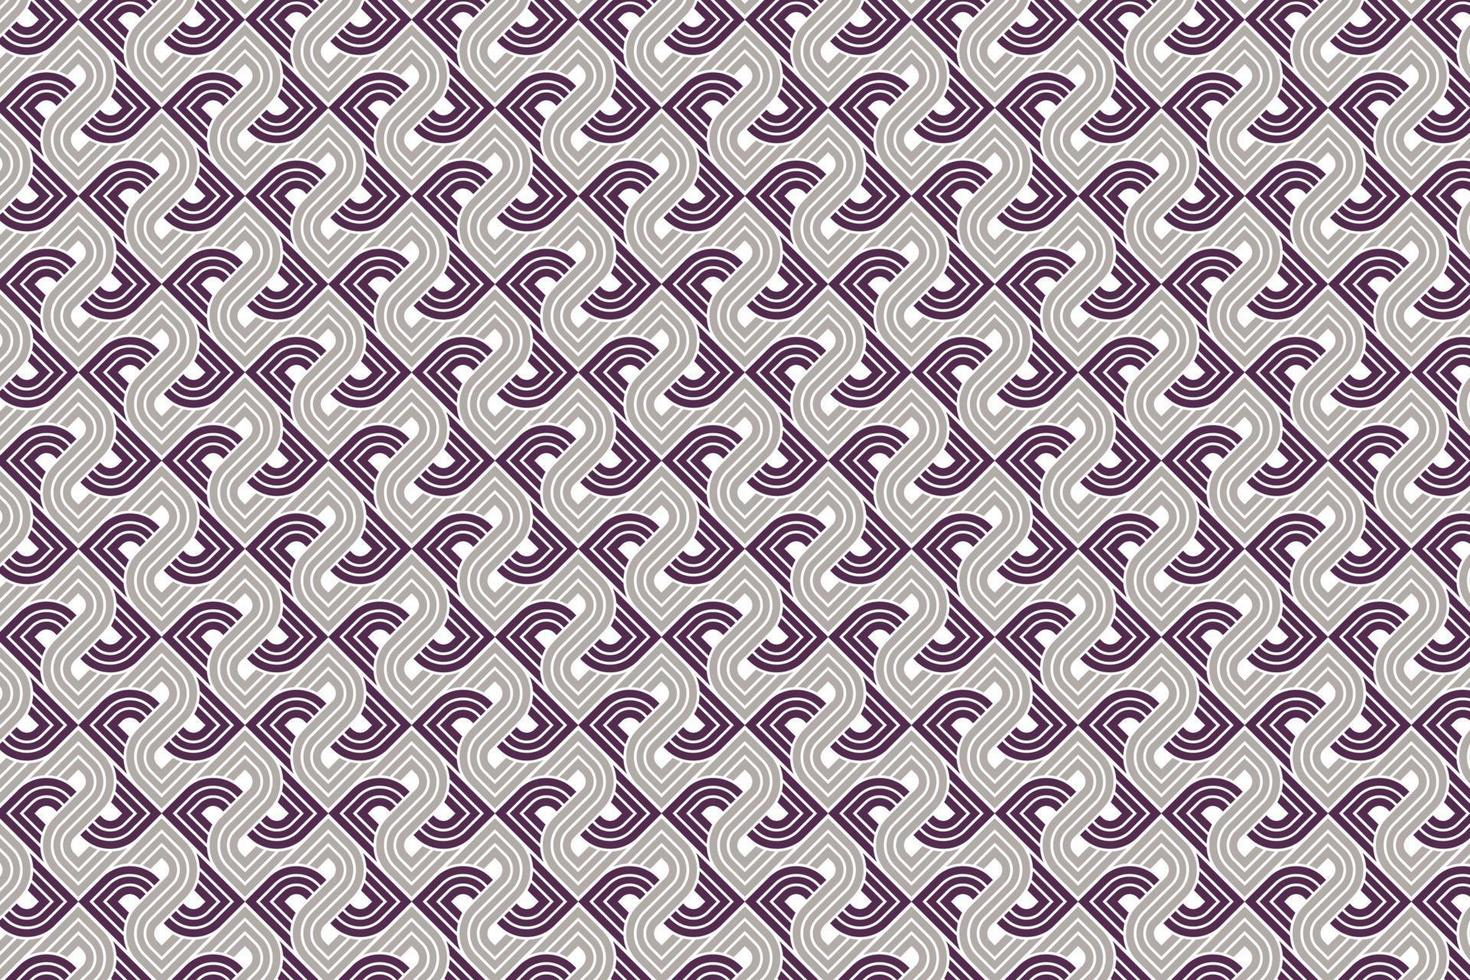 Muster im griechischen Stil mit Rautenverzierung. abstrakter moderner geometrischer Hintergrund. vektor